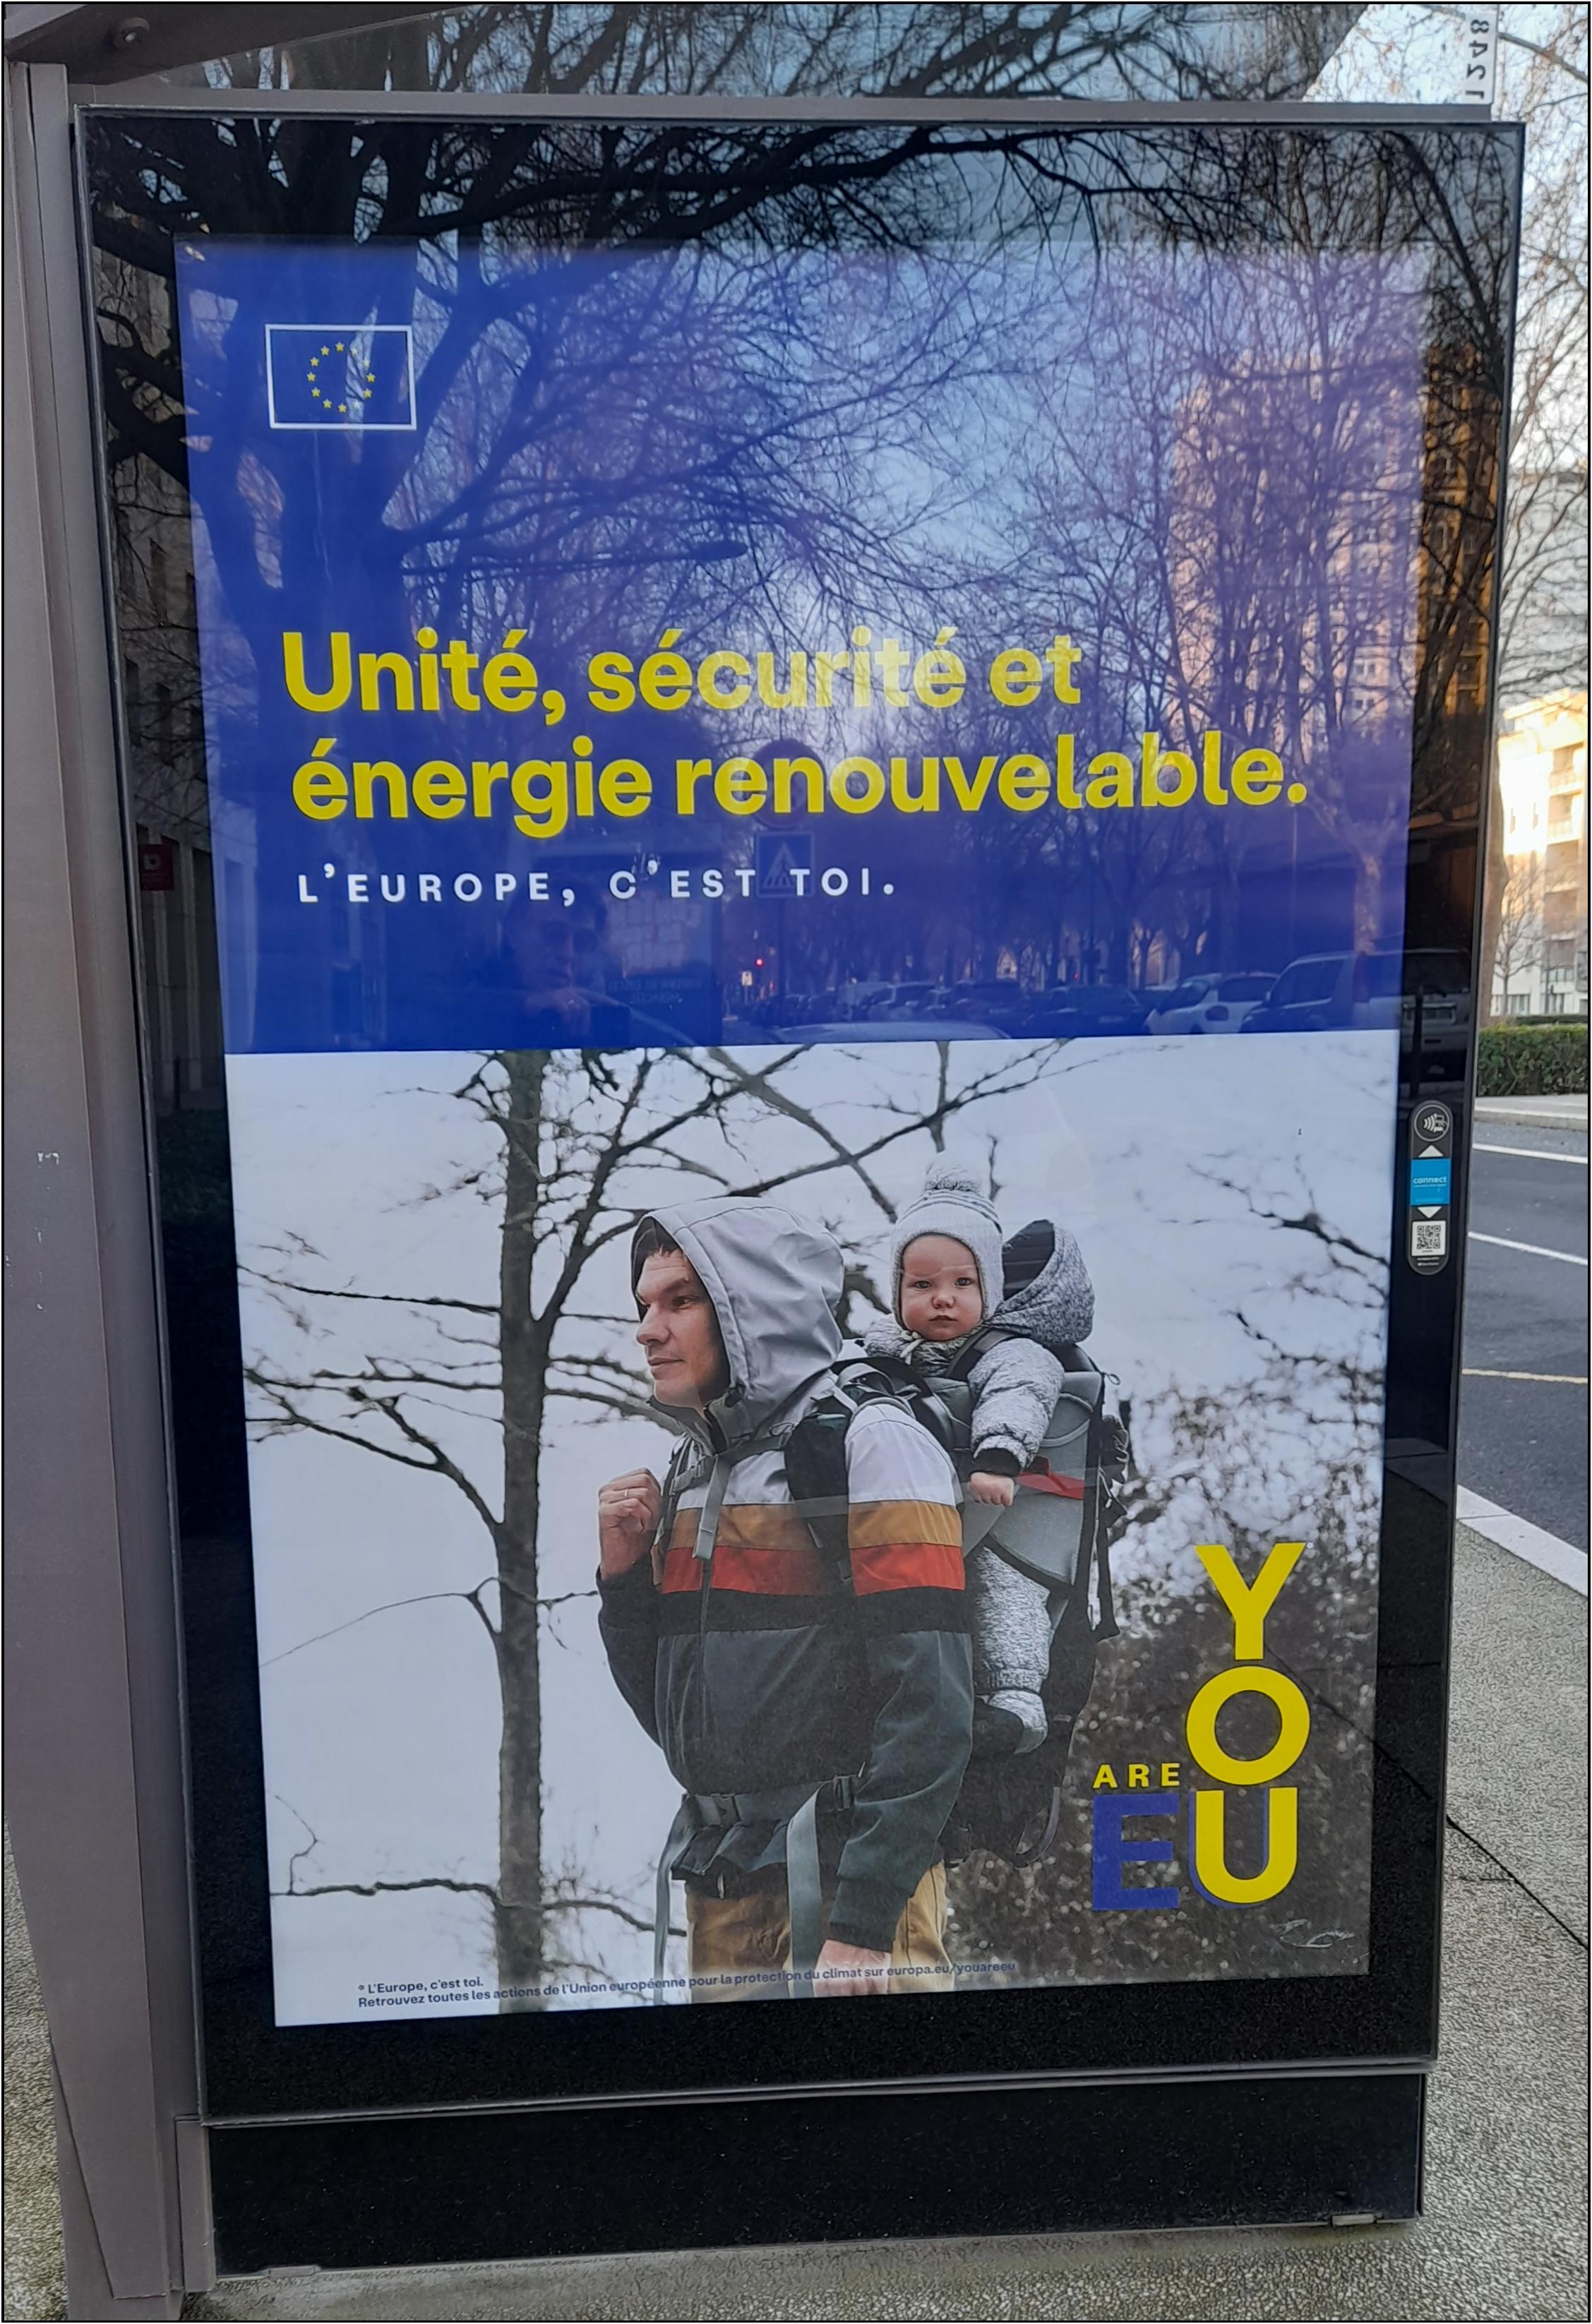 You are EU, publicit au slogan en anglais de la Commission europenne qui bafoue la langue franaise